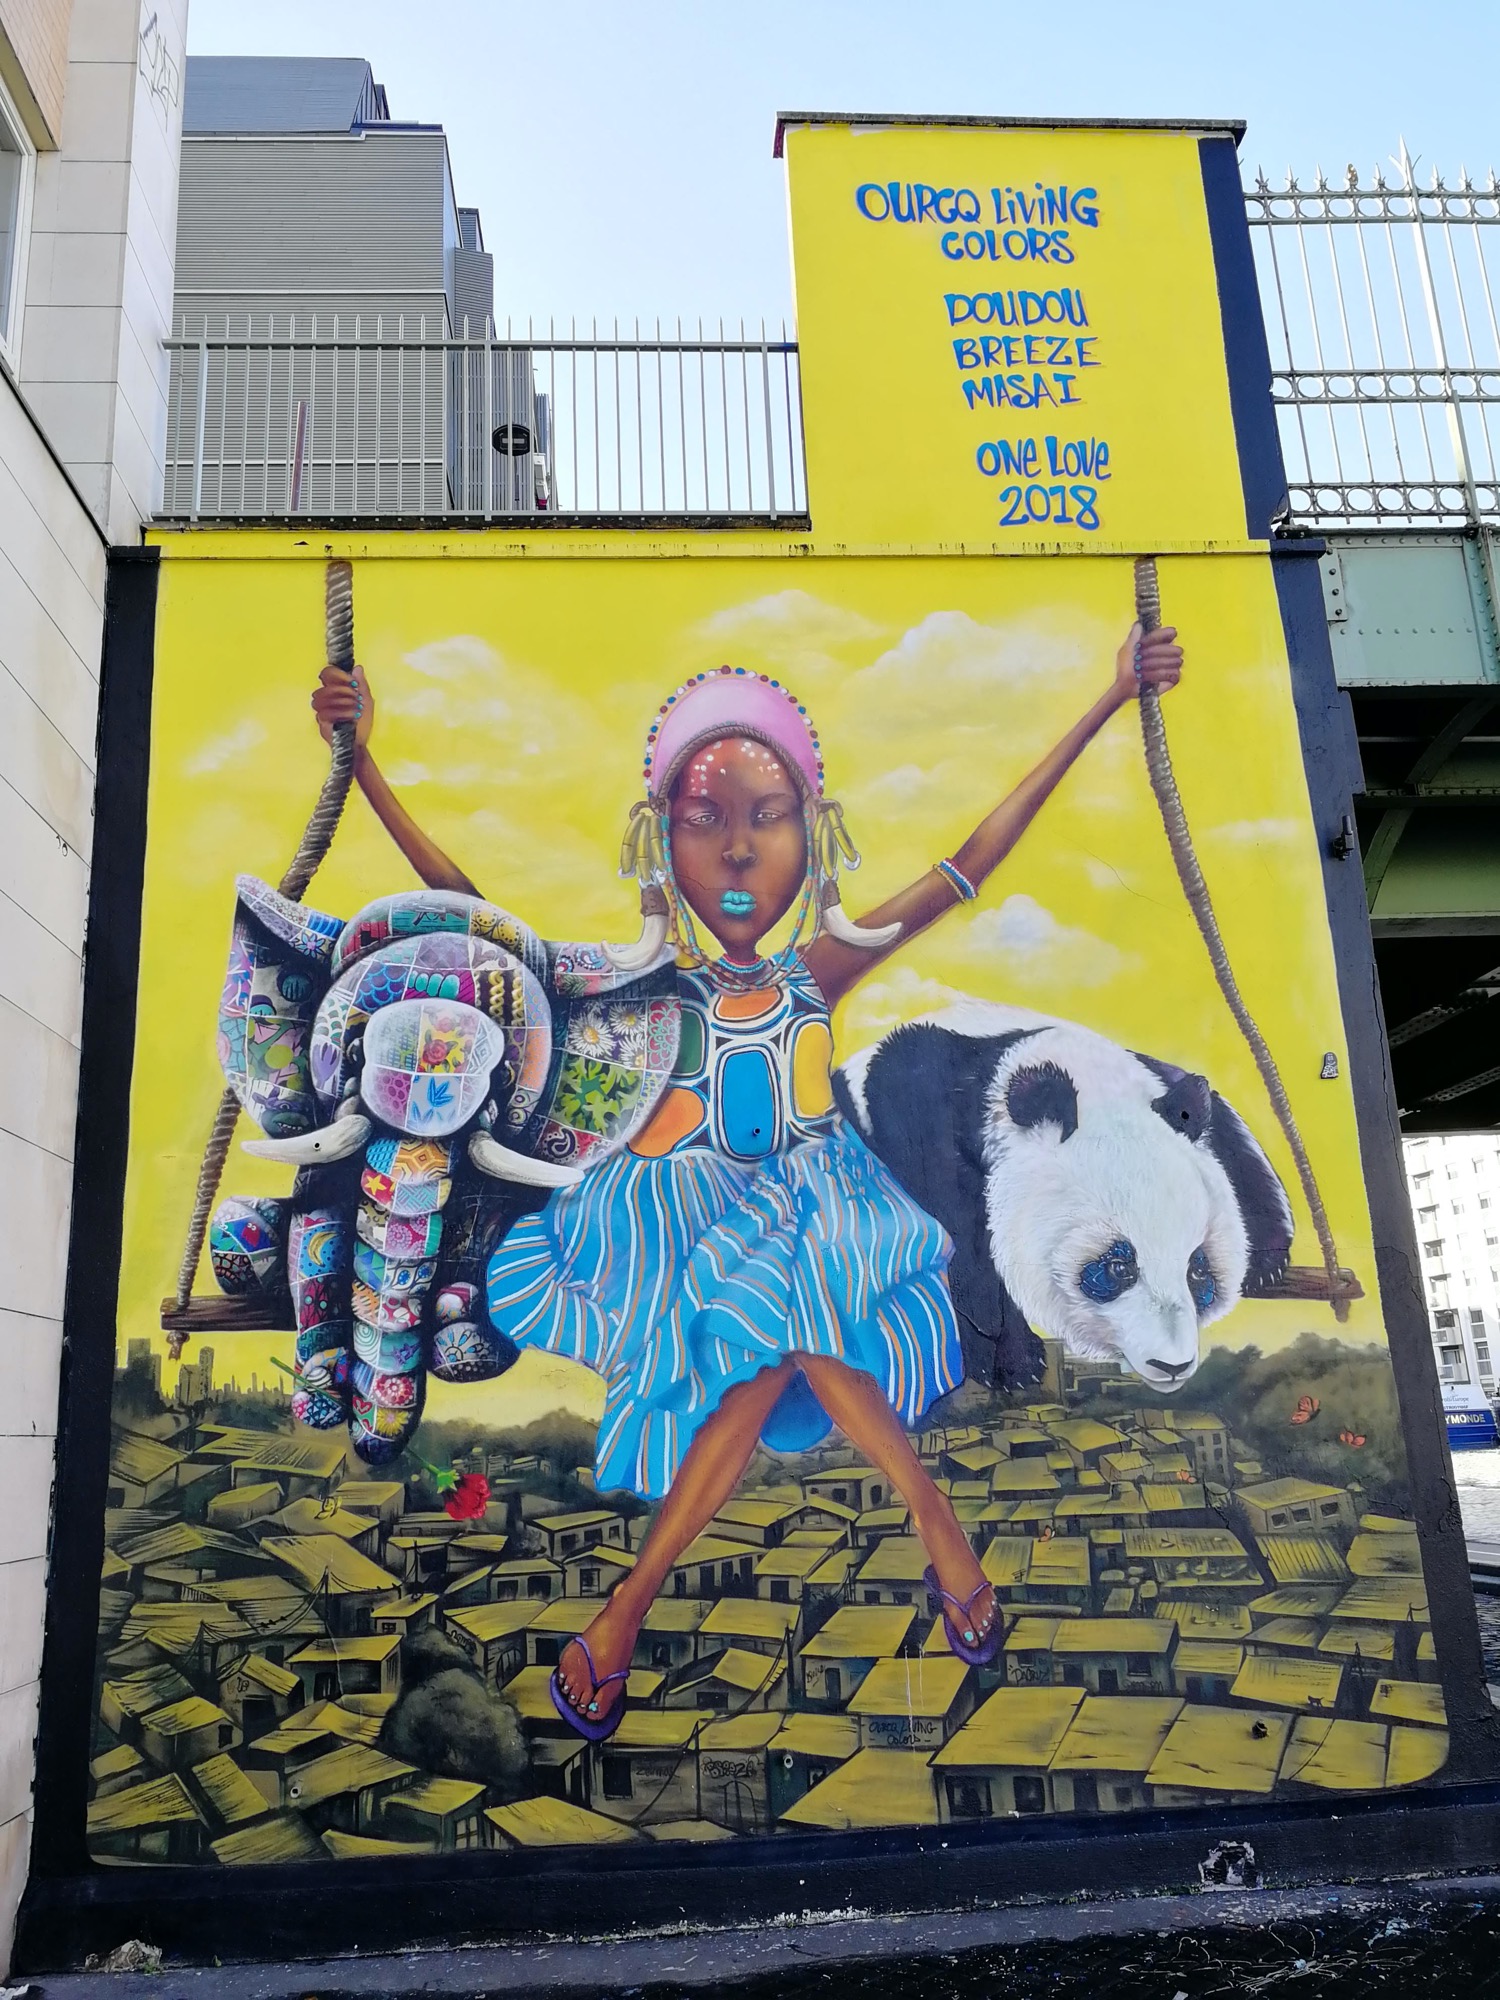 Graffiti 736 One love 2018 - Ourcq living colors de Masai capturé par Rabot à Paris France